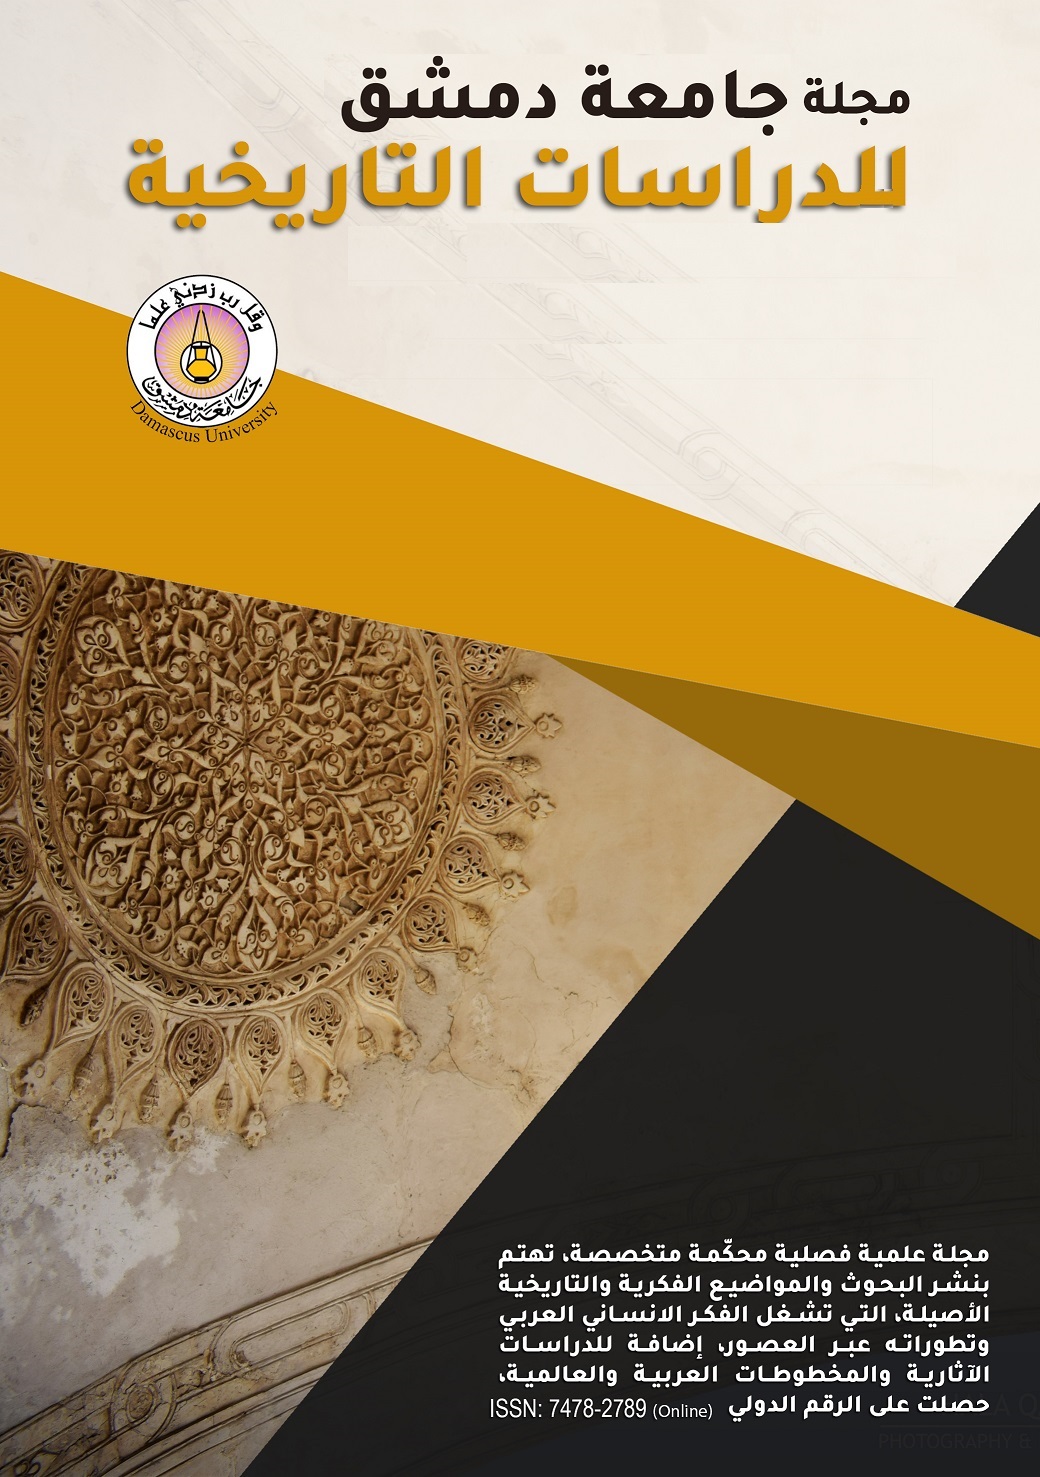 					معاينة مجلد 140 عدد 1 (2020): مجلة جامعة دمشق للدراسات التاريخية
				